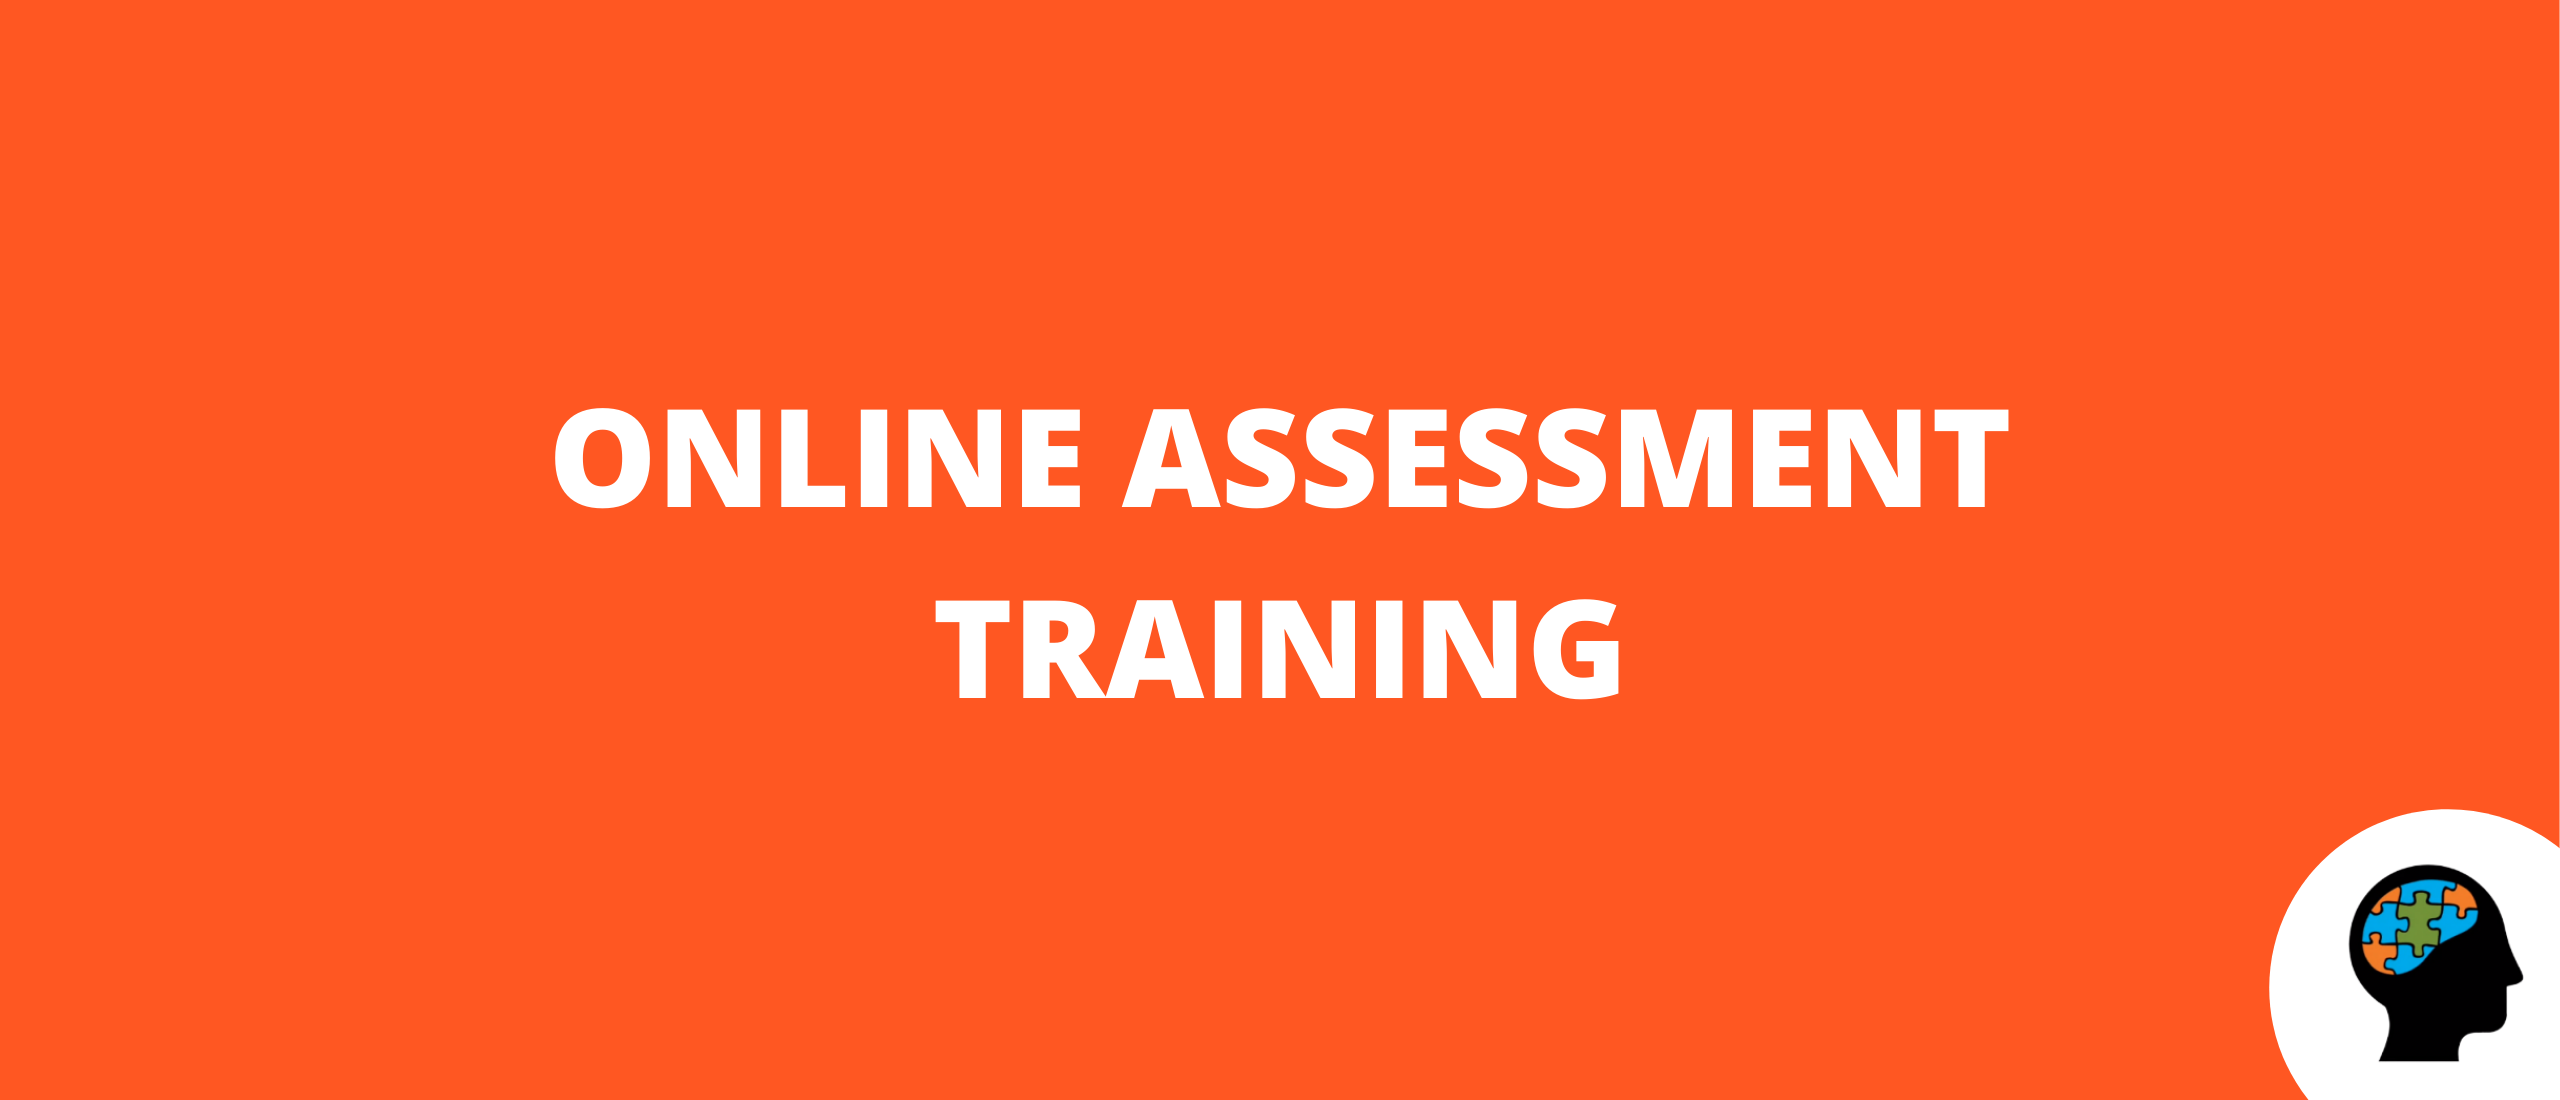 Online assessment training